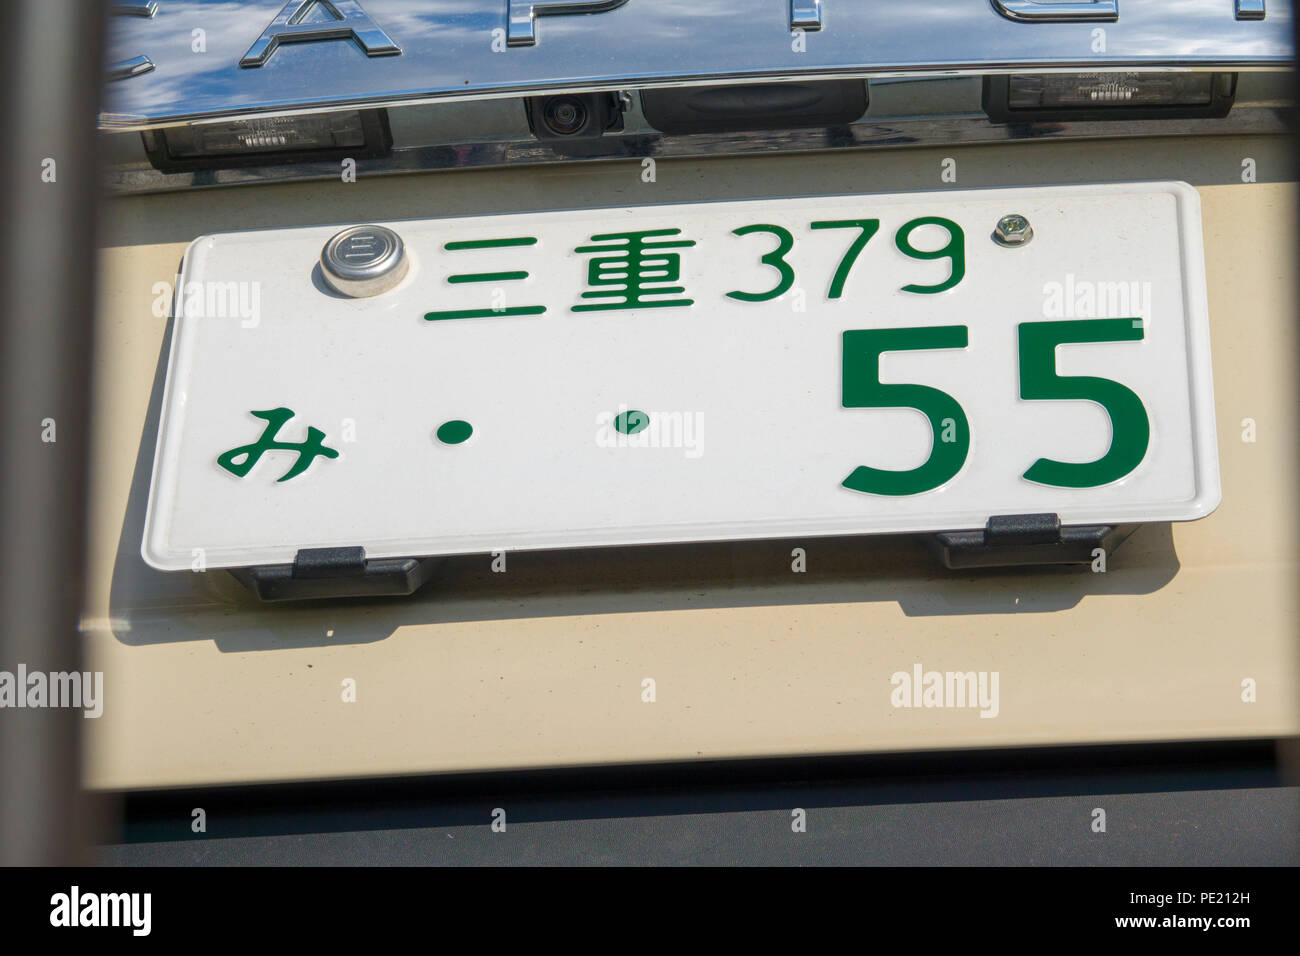 Japanische Auto Nummernschild am Auto mit japanischen Zeichen Kyoto Japan  Asien Stockfotografie - Alamy